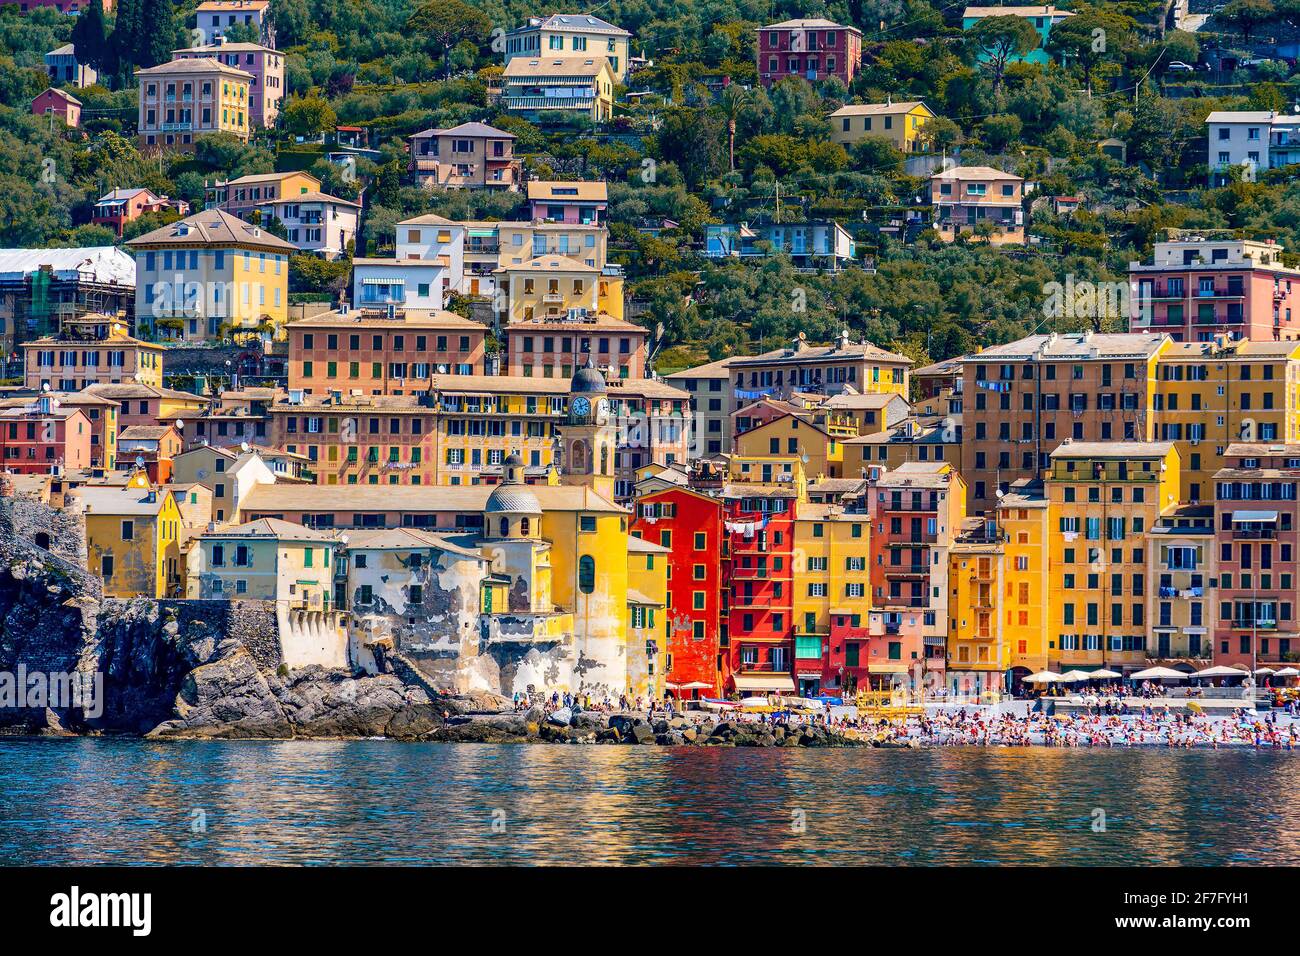 Vista del pintoresco pueblo de Camogli en Liguria en italiano Riviera con palacios pintados de naranja y amarillo brillante Foto de stock